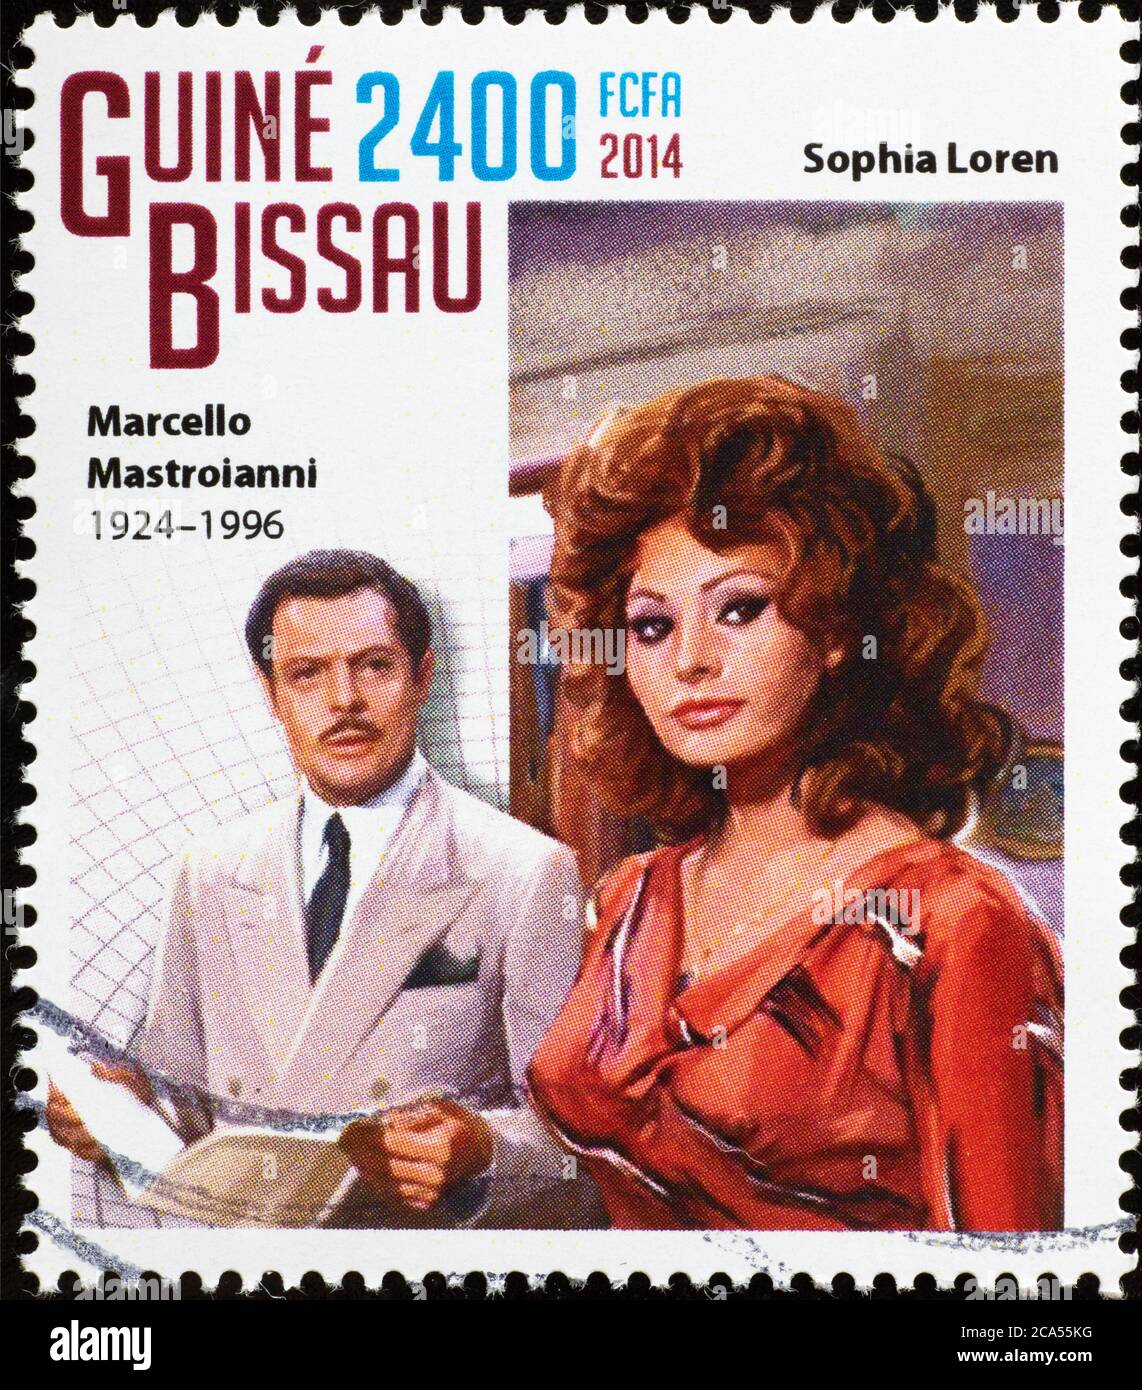 Marcello Mastroianni and Sofia Loren on postage stamp Stock Photo